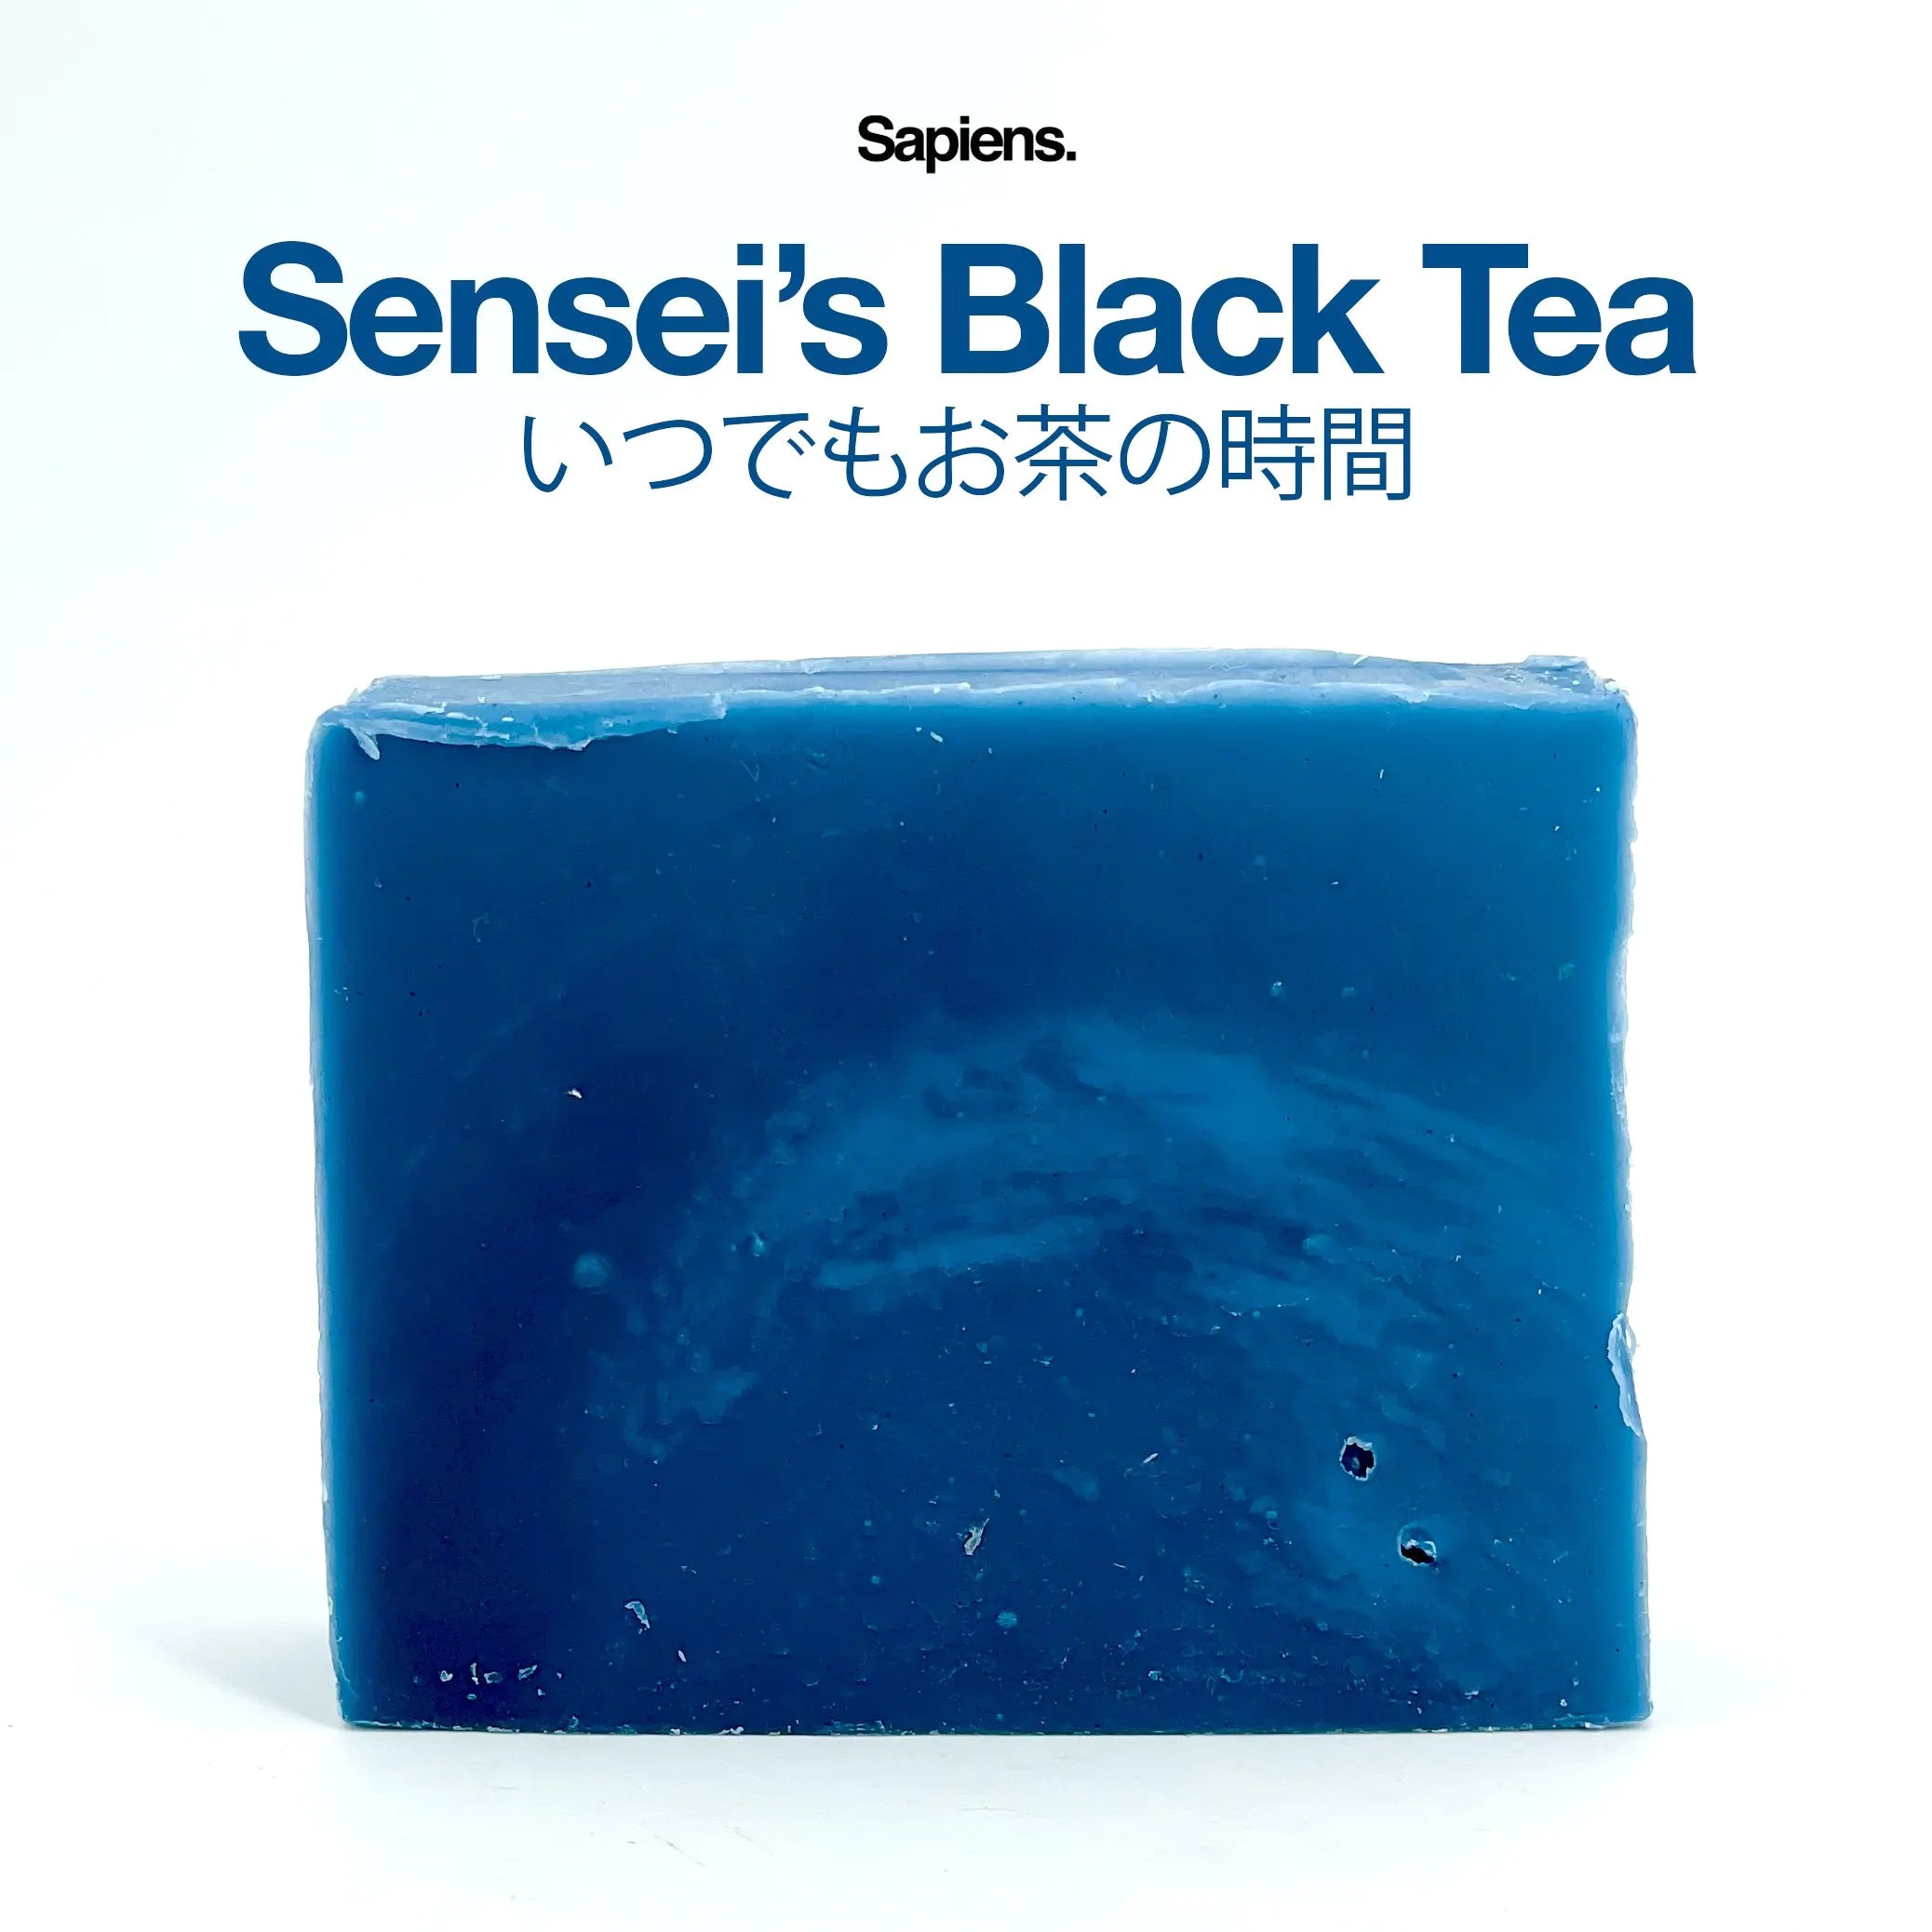 Savon solide Sensei's Black Tea.